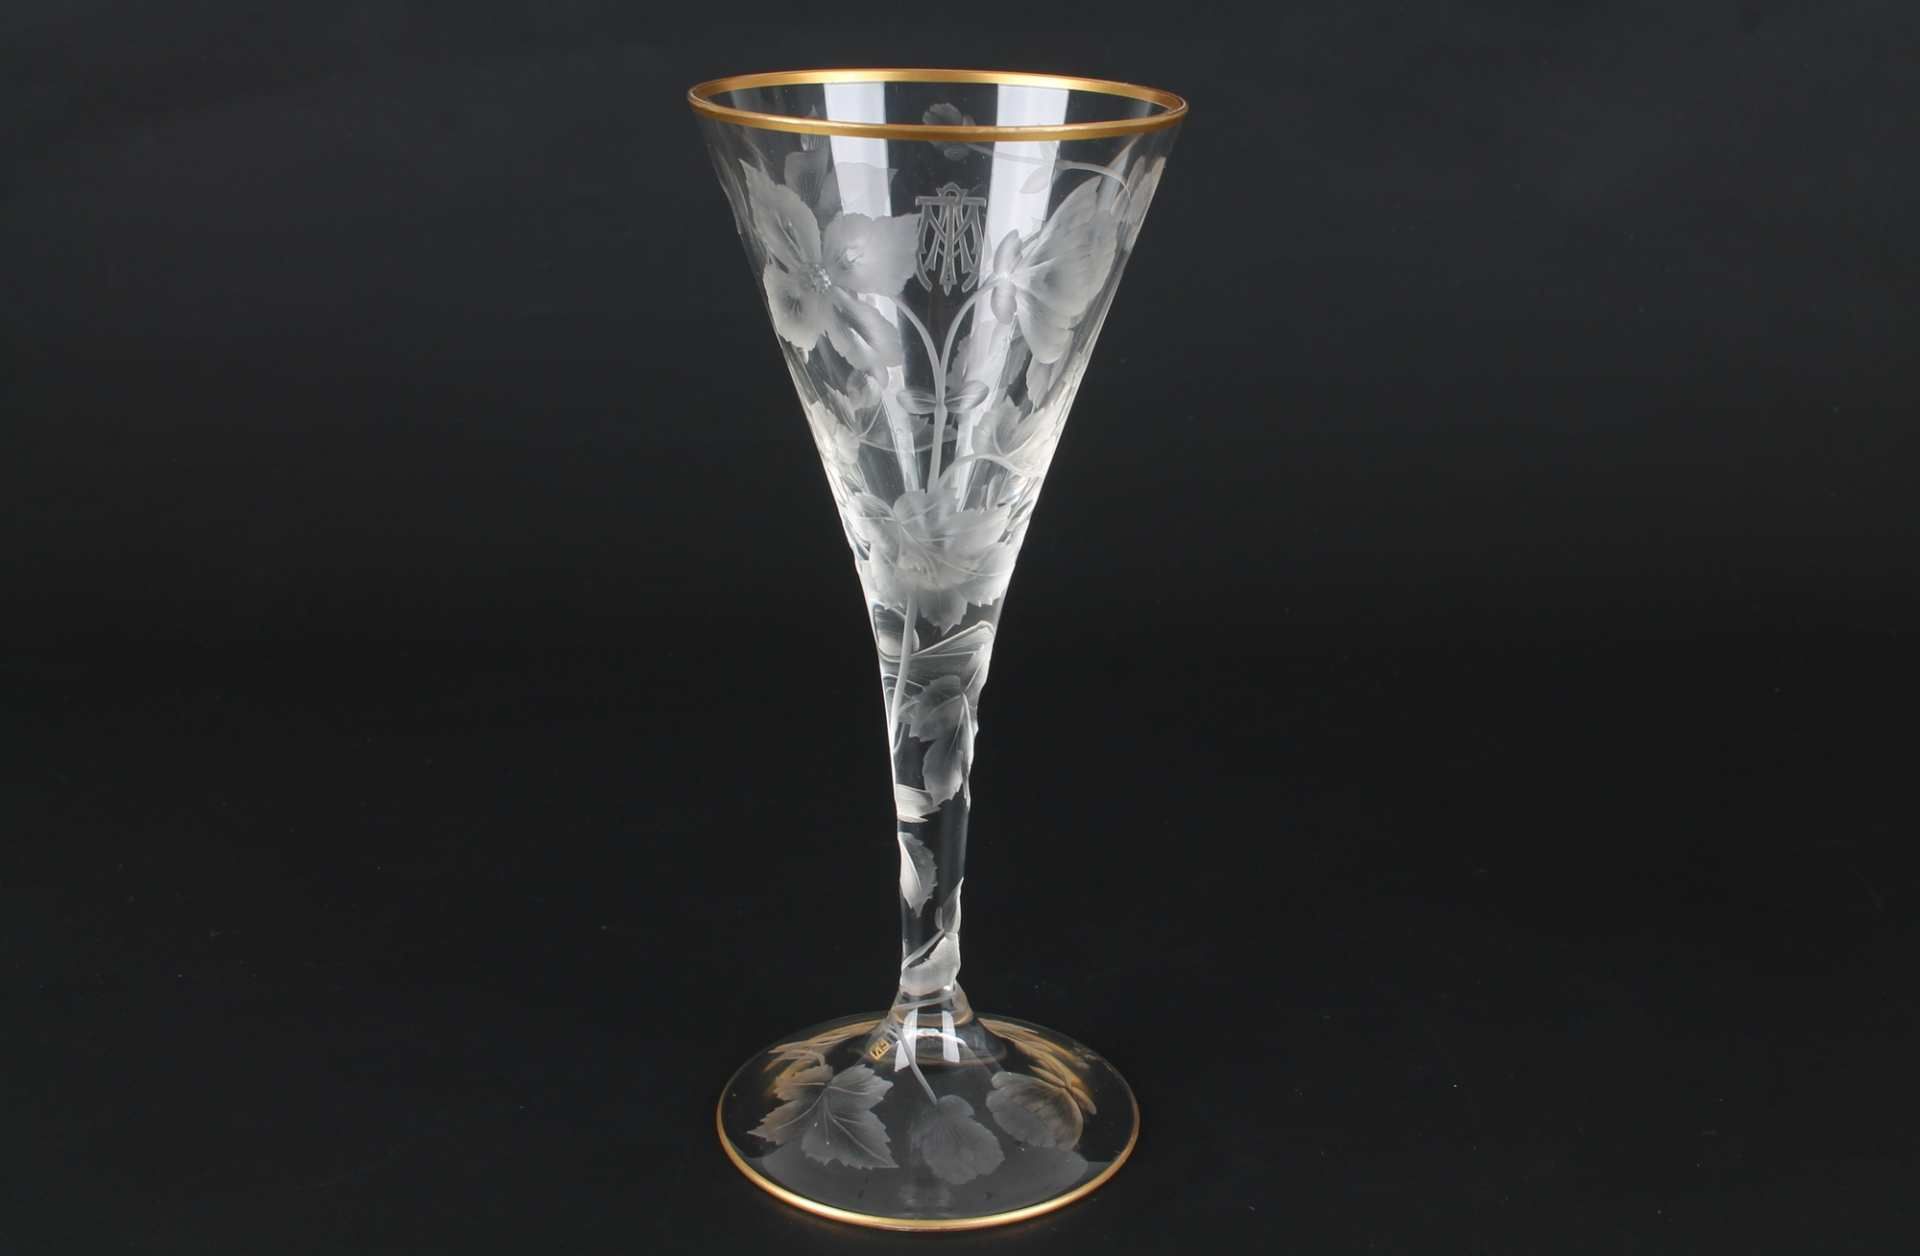 Ludwig Moser Karlsbad Kelchglas, glass goblet, - Image 3 of 5